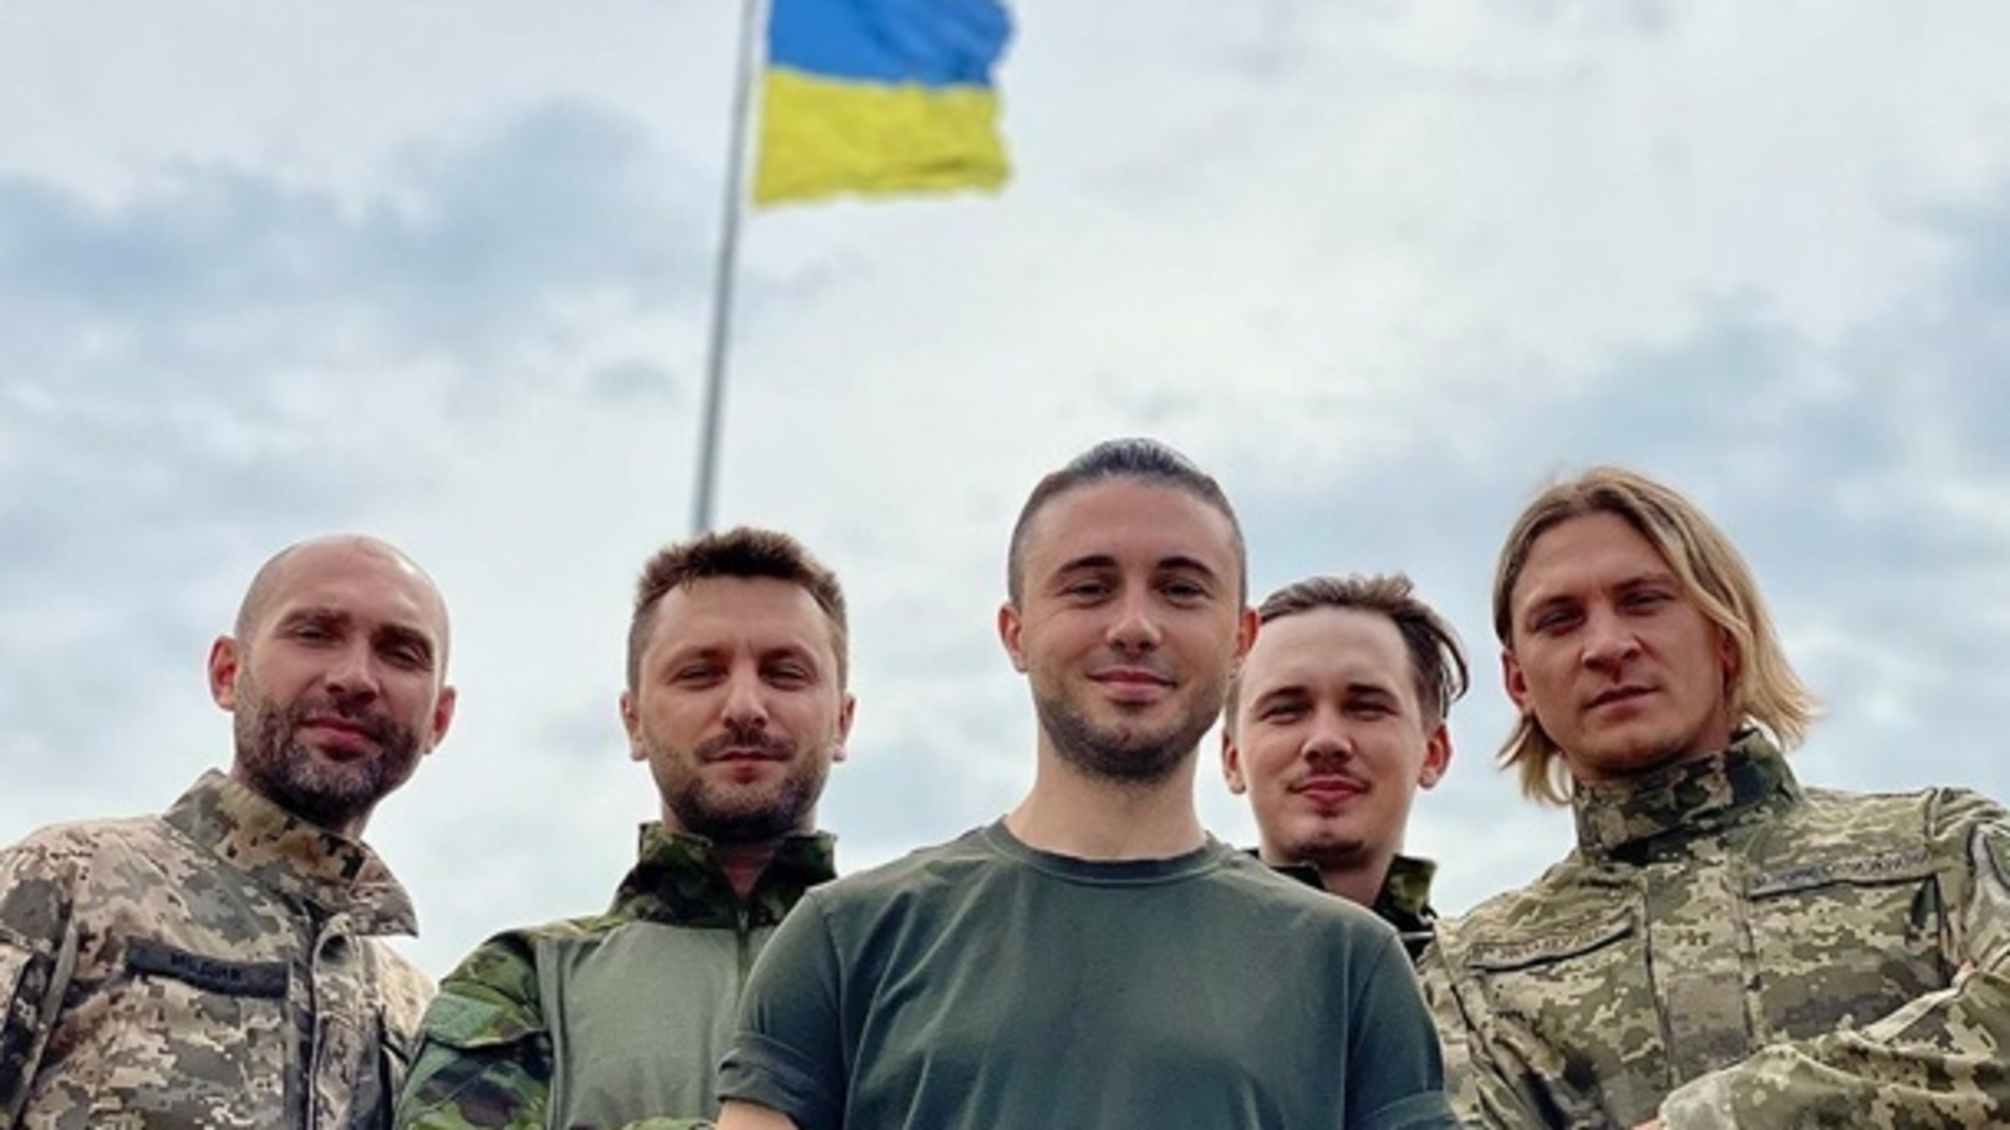 Гурт 'Антитіла' виступив проти участі України у Євробаченні через масштабні витрати